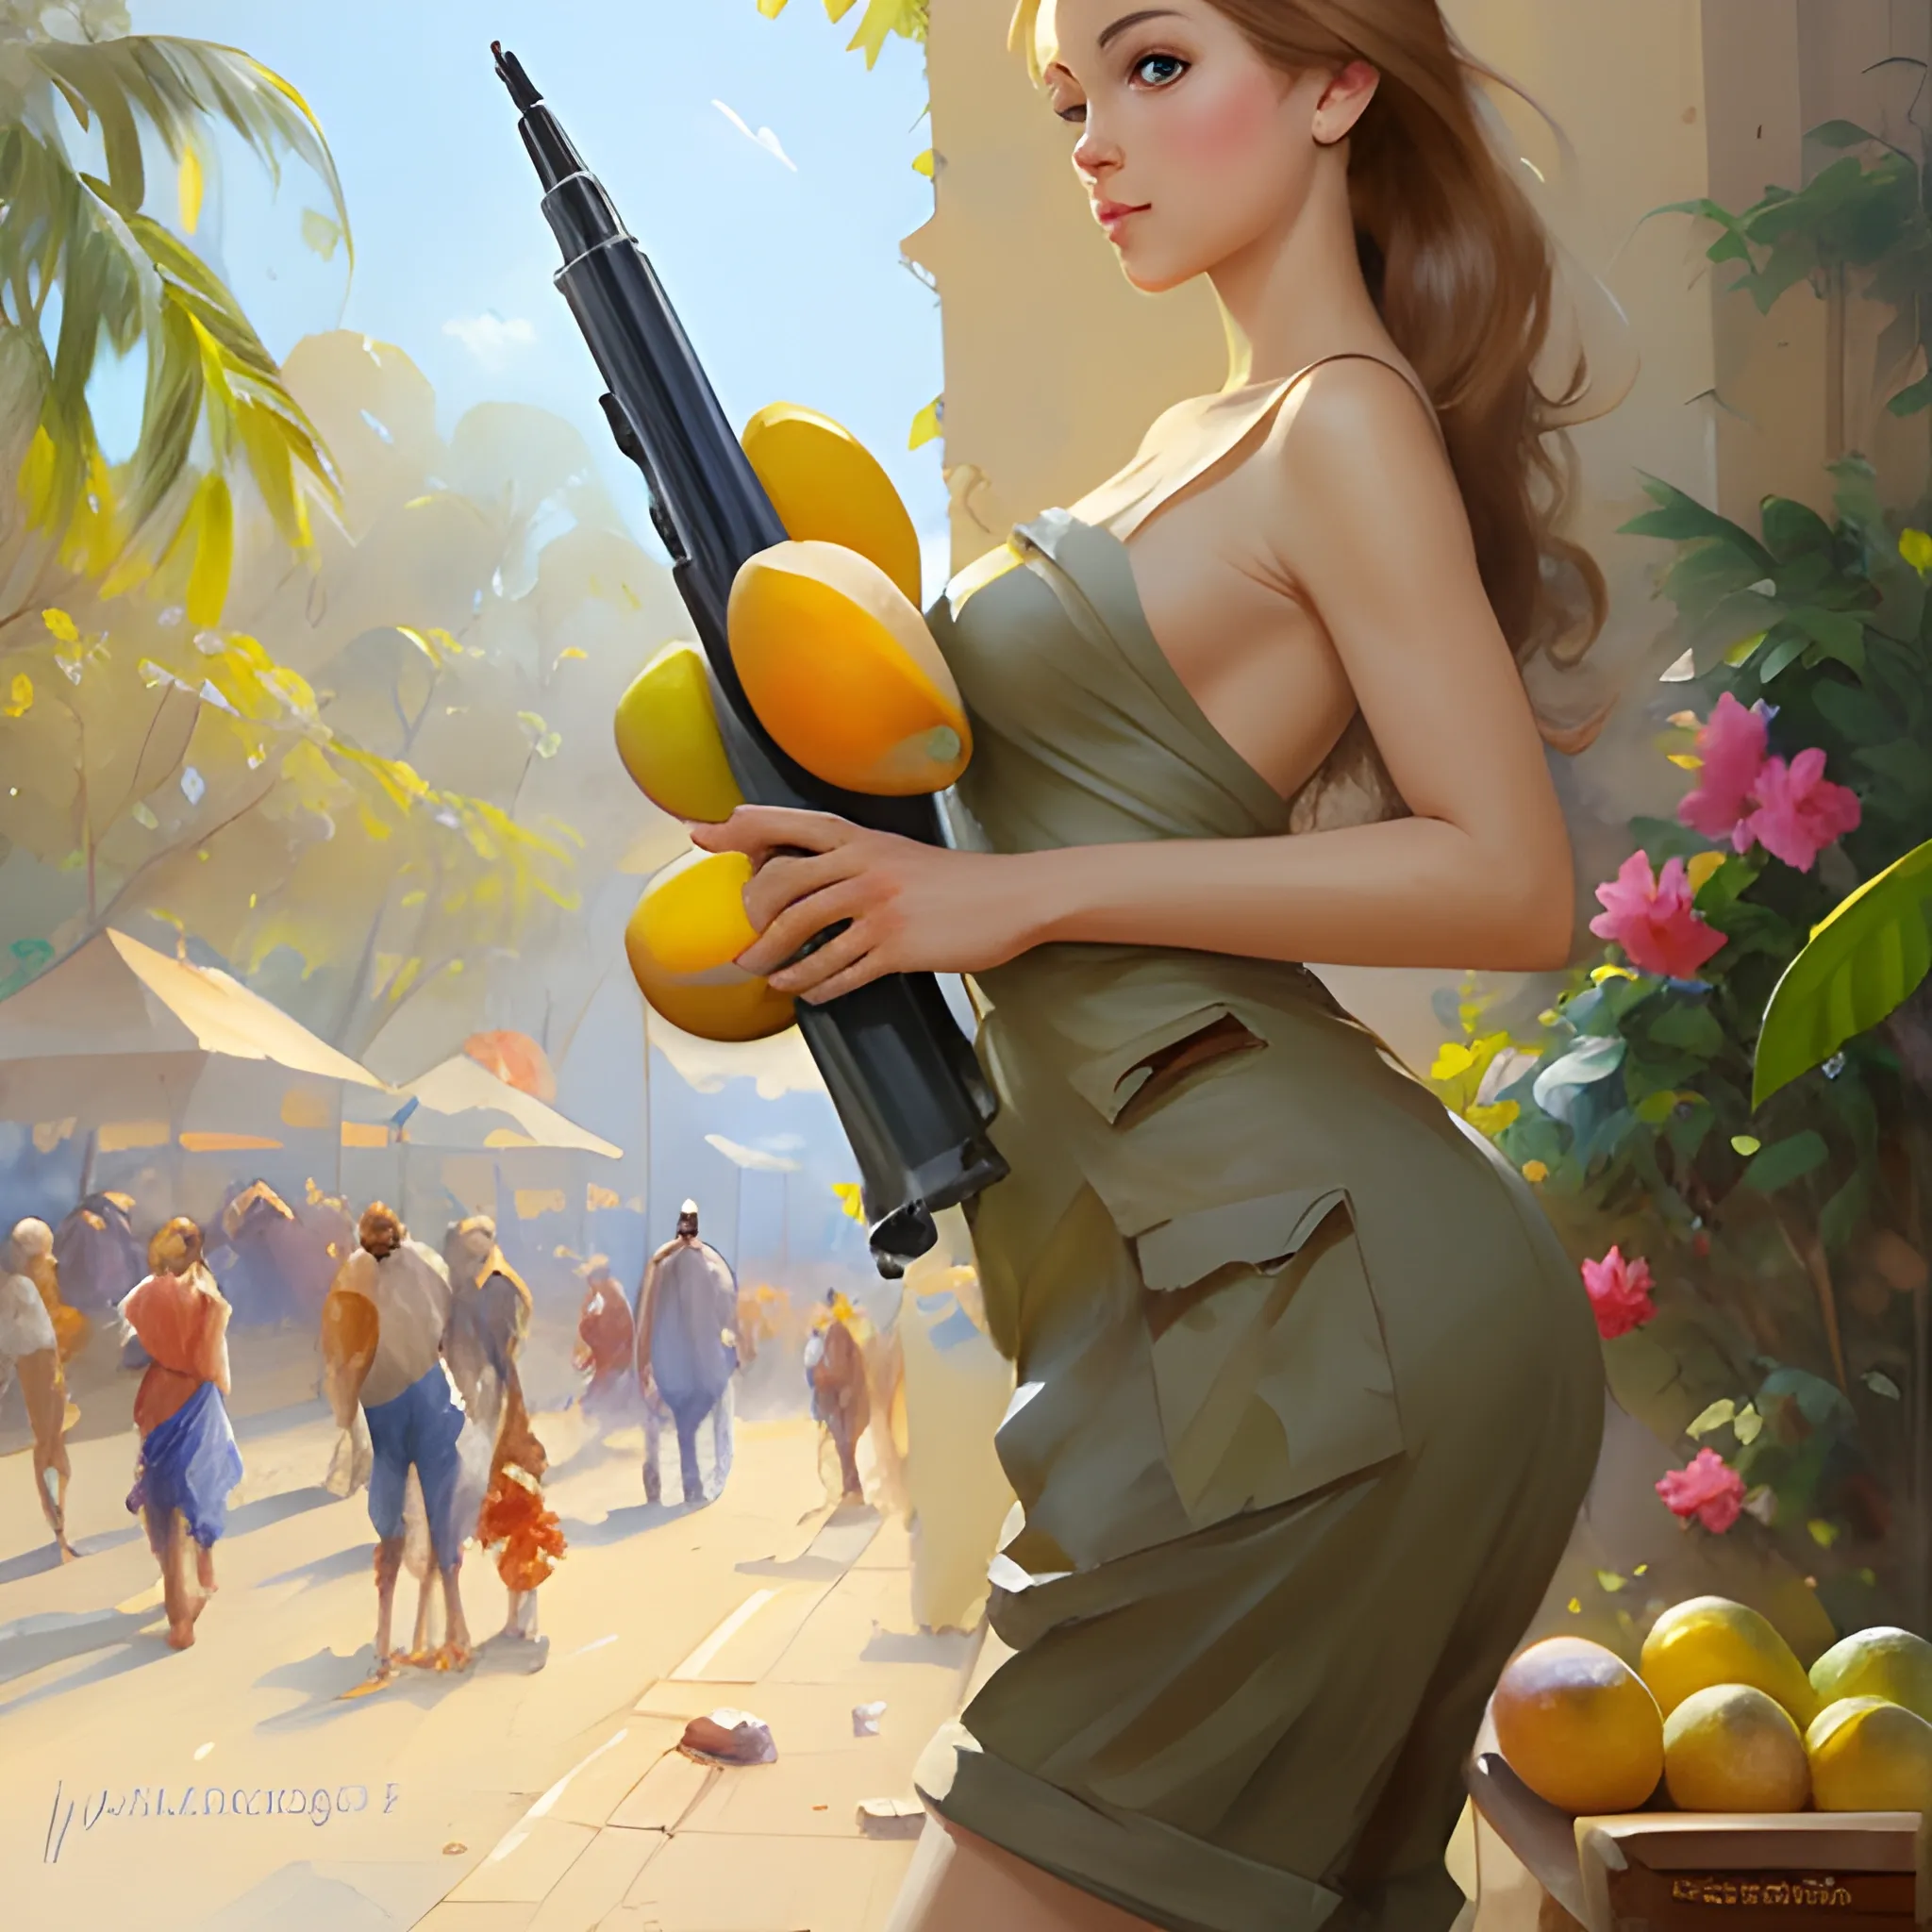 Pocket of mangos, big bazooka, Vladimir Volegov.